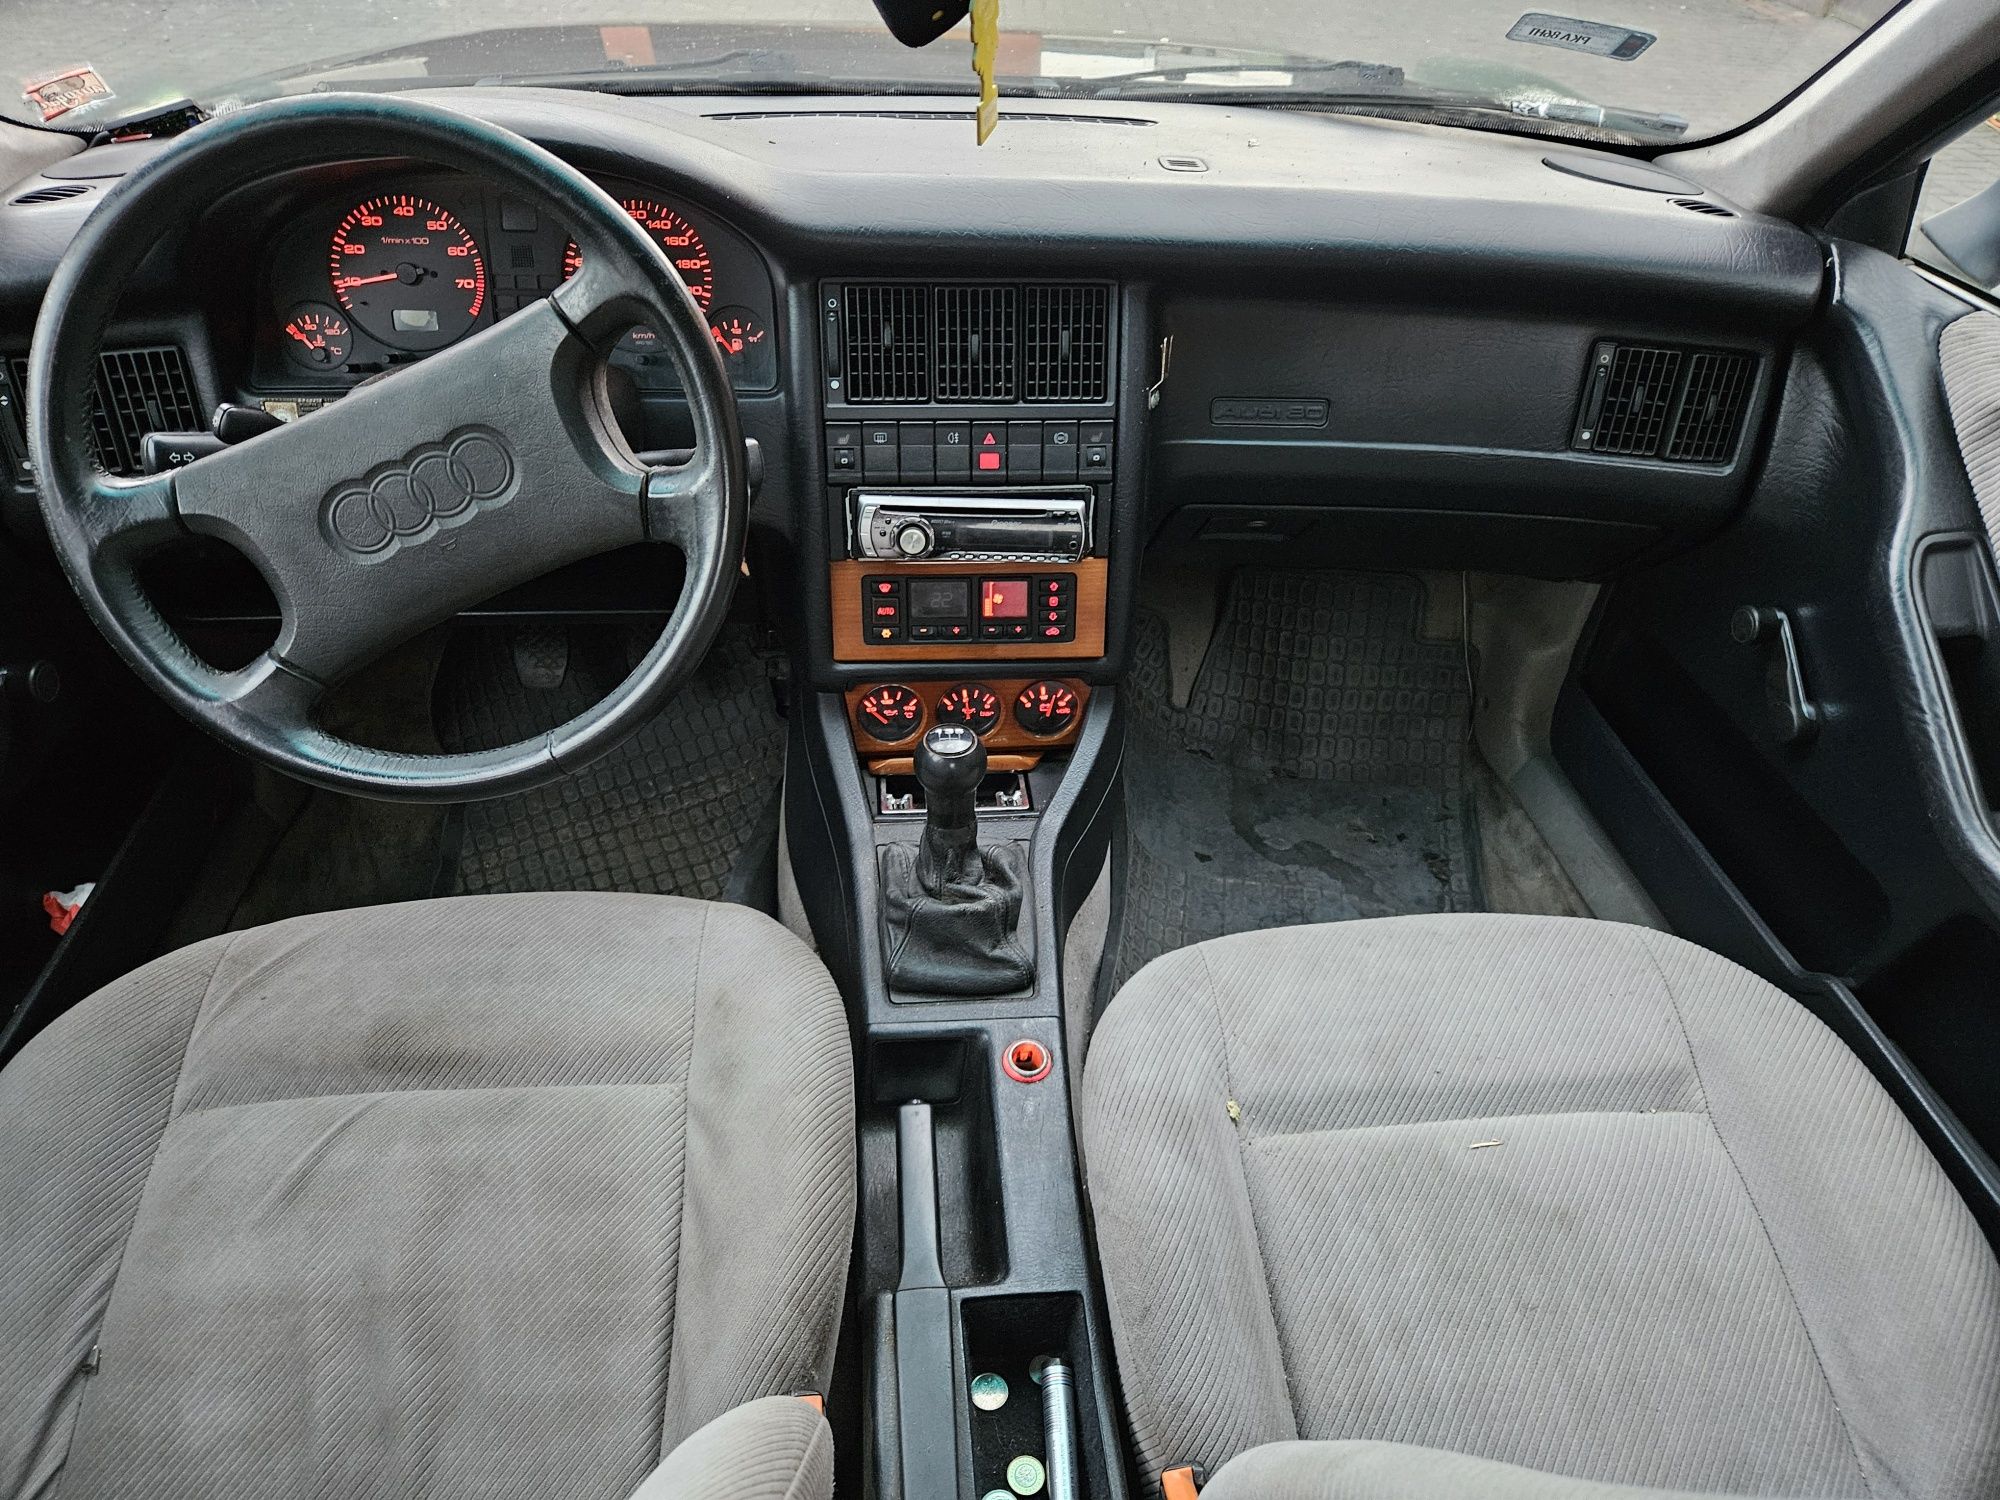 Audi 80 b4 wspomaganie klima 2.0 B 115km z potencjałem